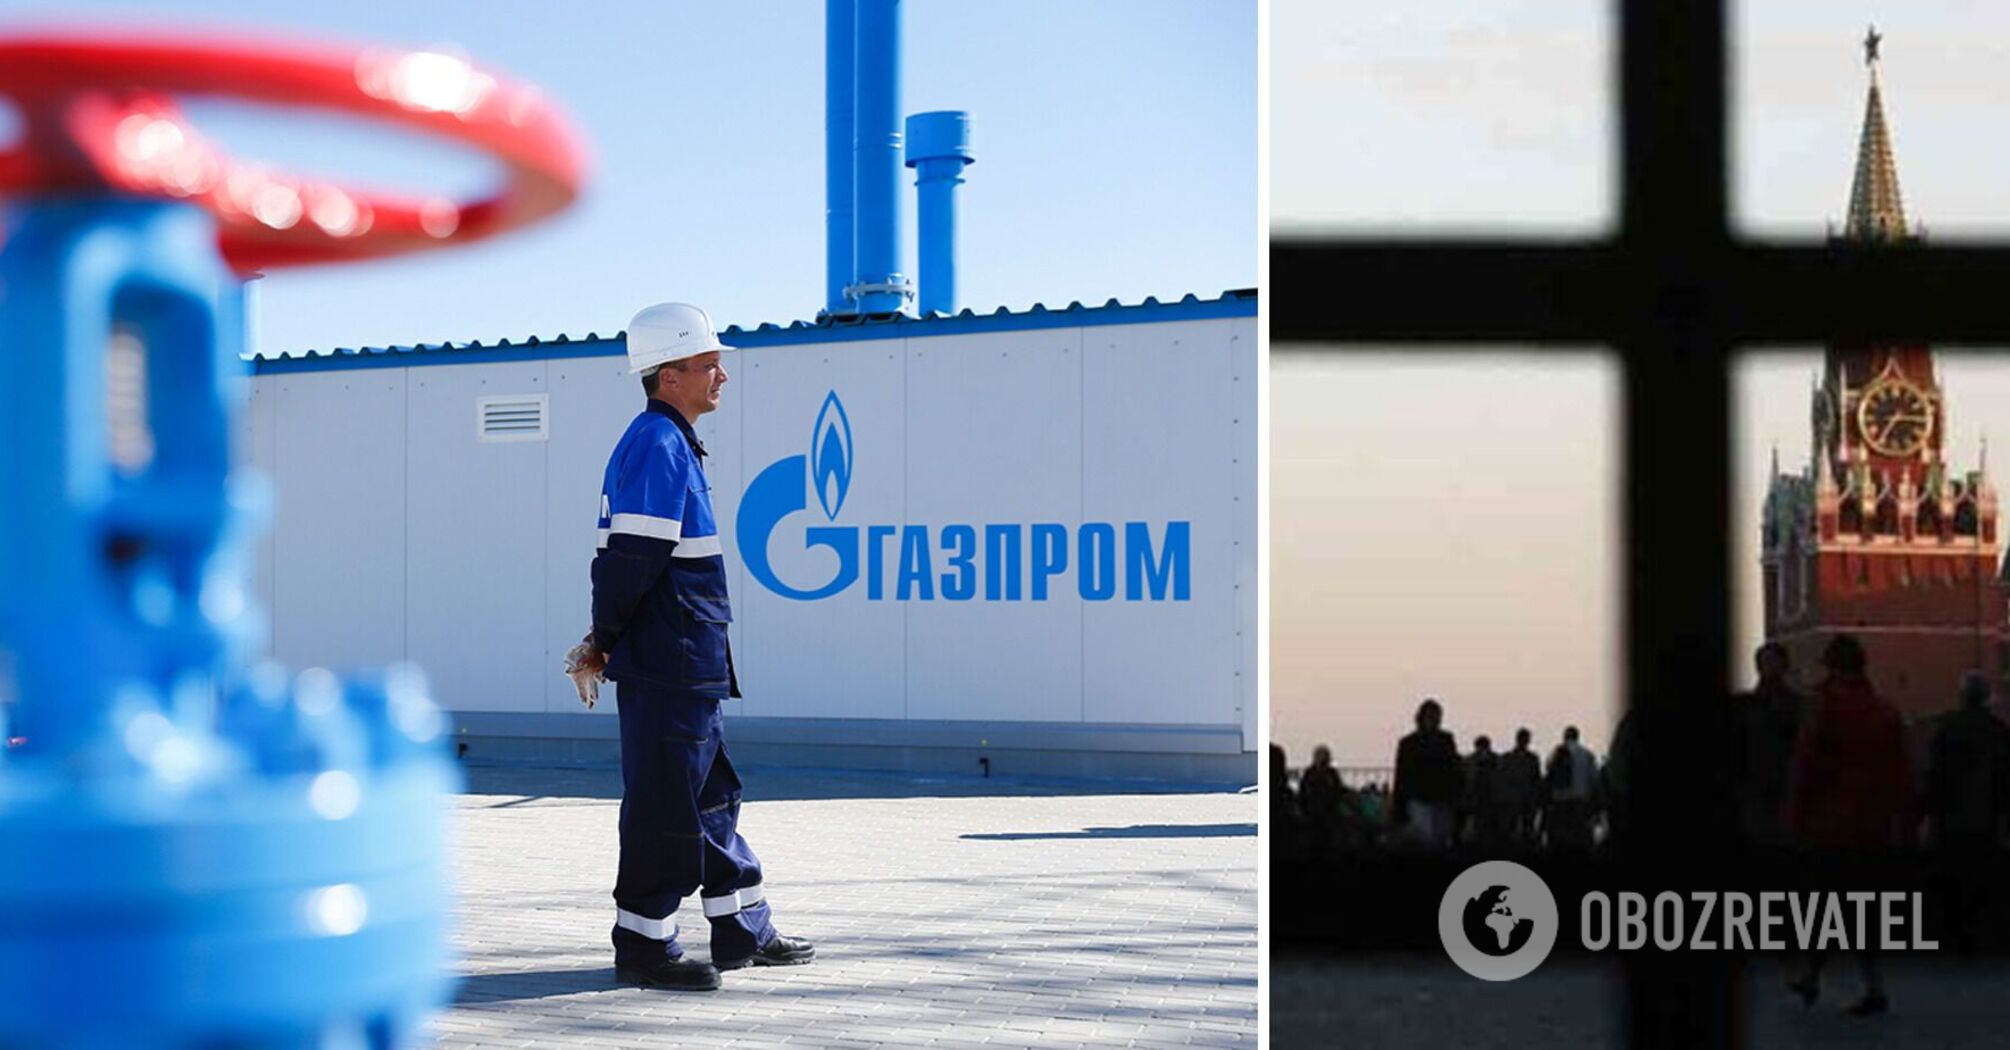 Wyniki Gazpromu załamały się